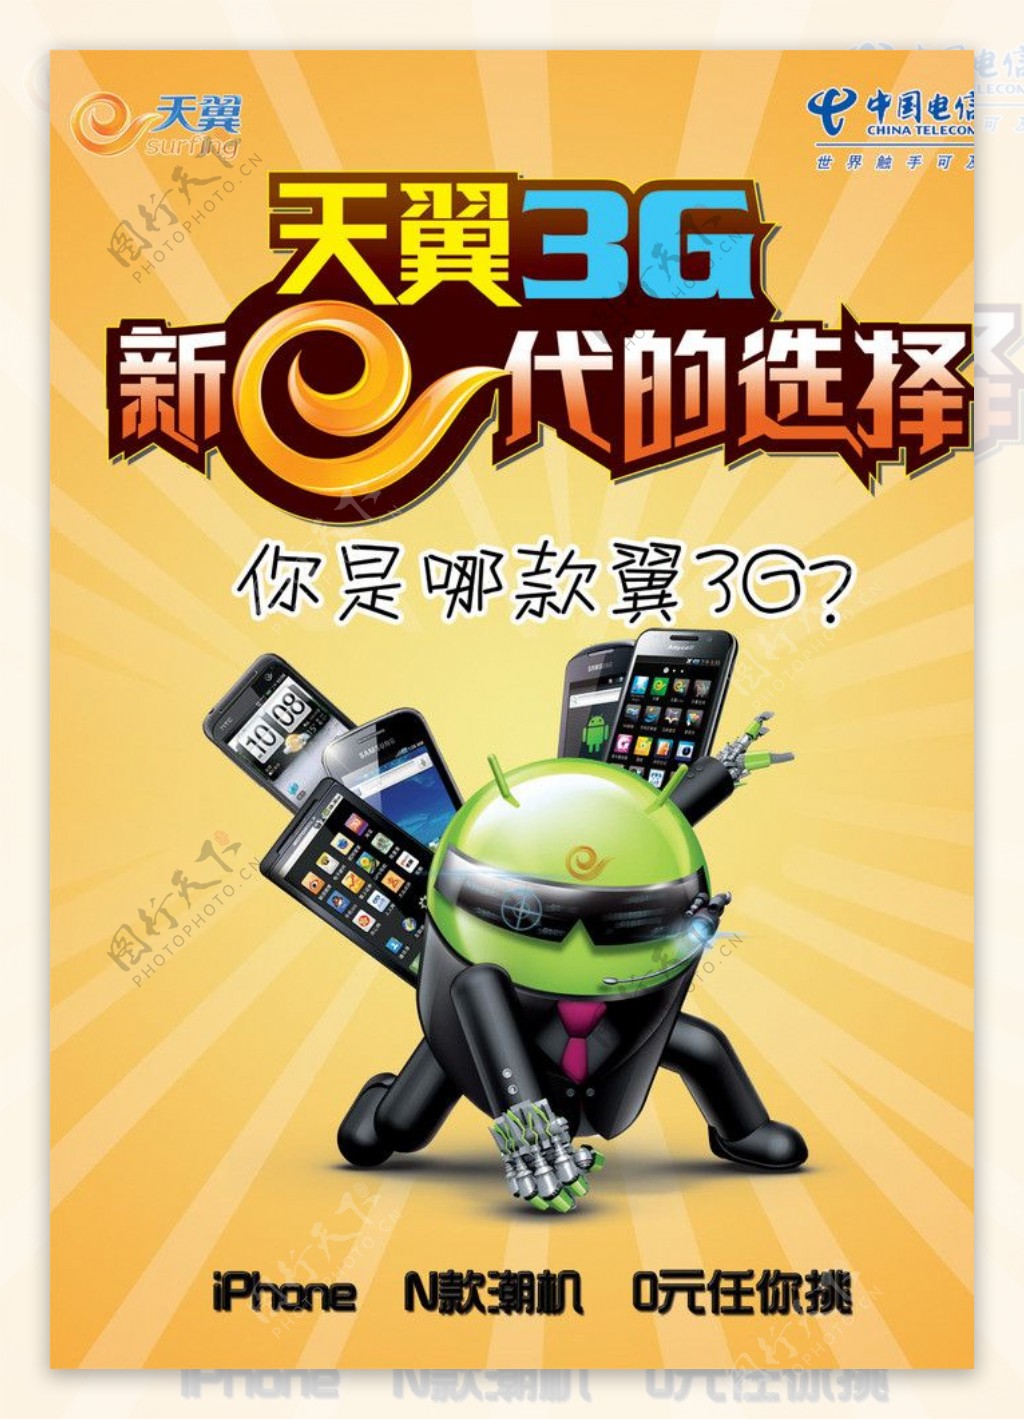 3G手机套机海报图片